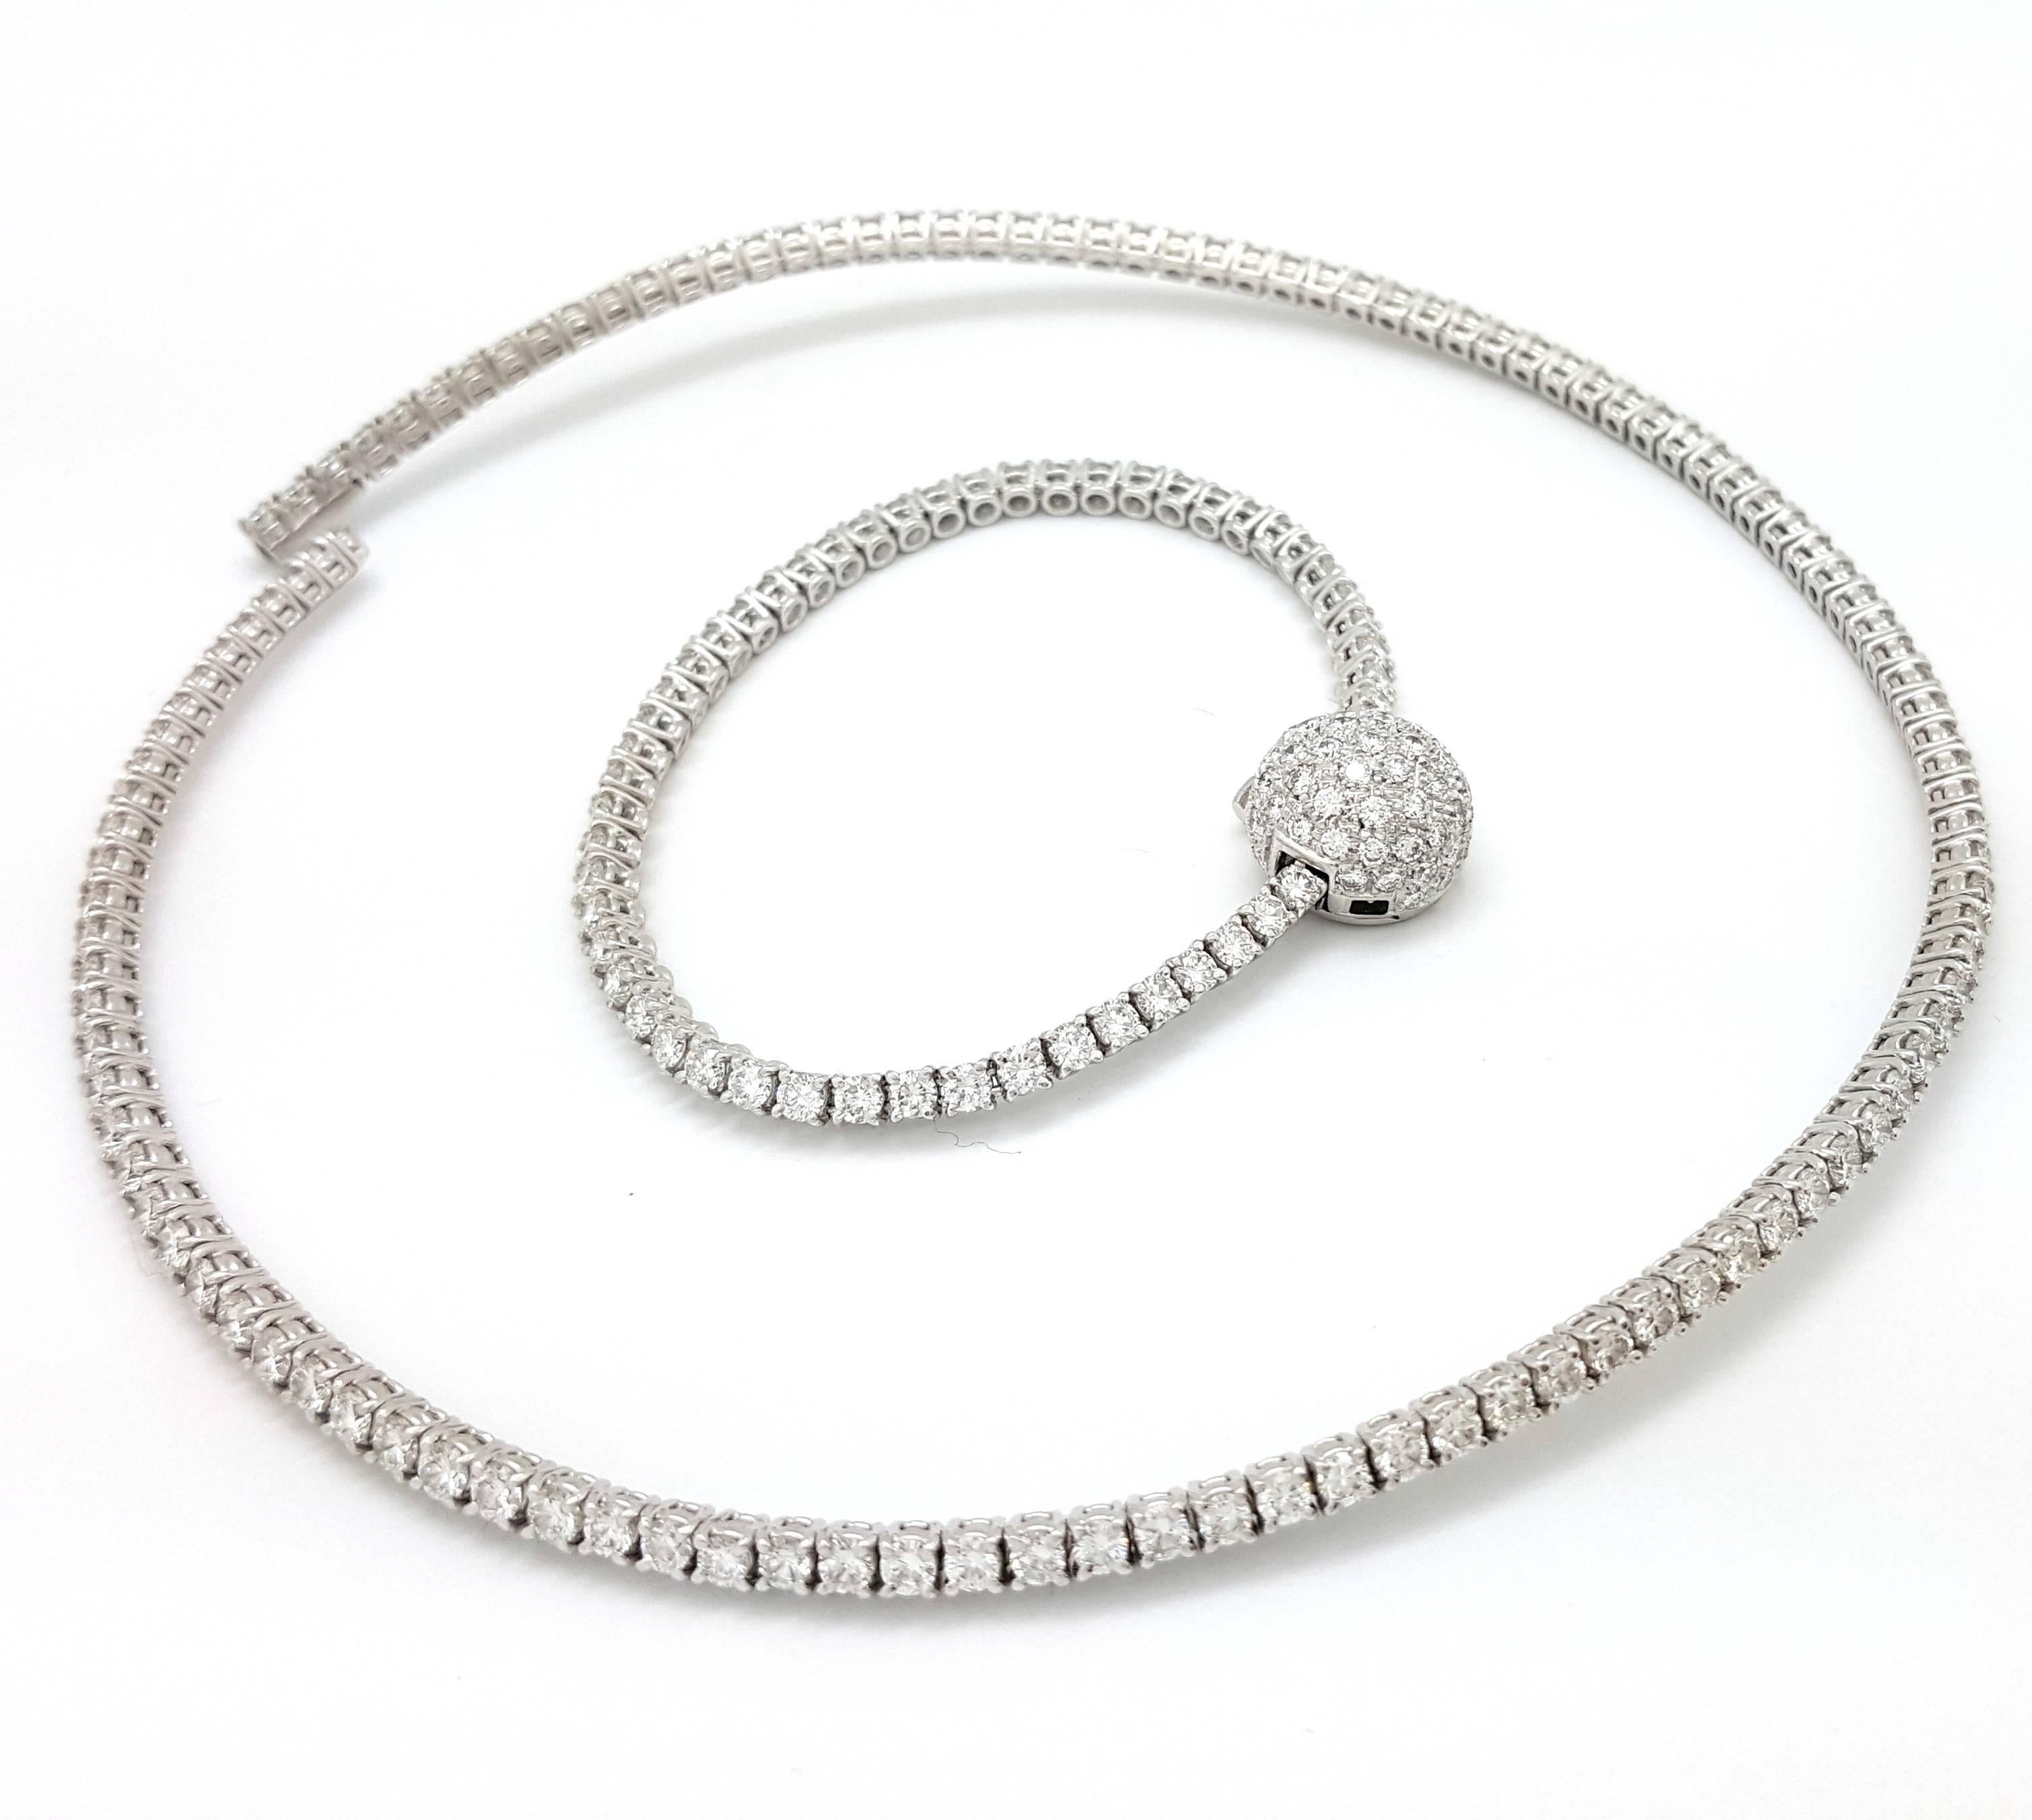 Stefan Hafner 11.93 Carats Diamonds Gold Collar Necklace Bracelet For Sale 1